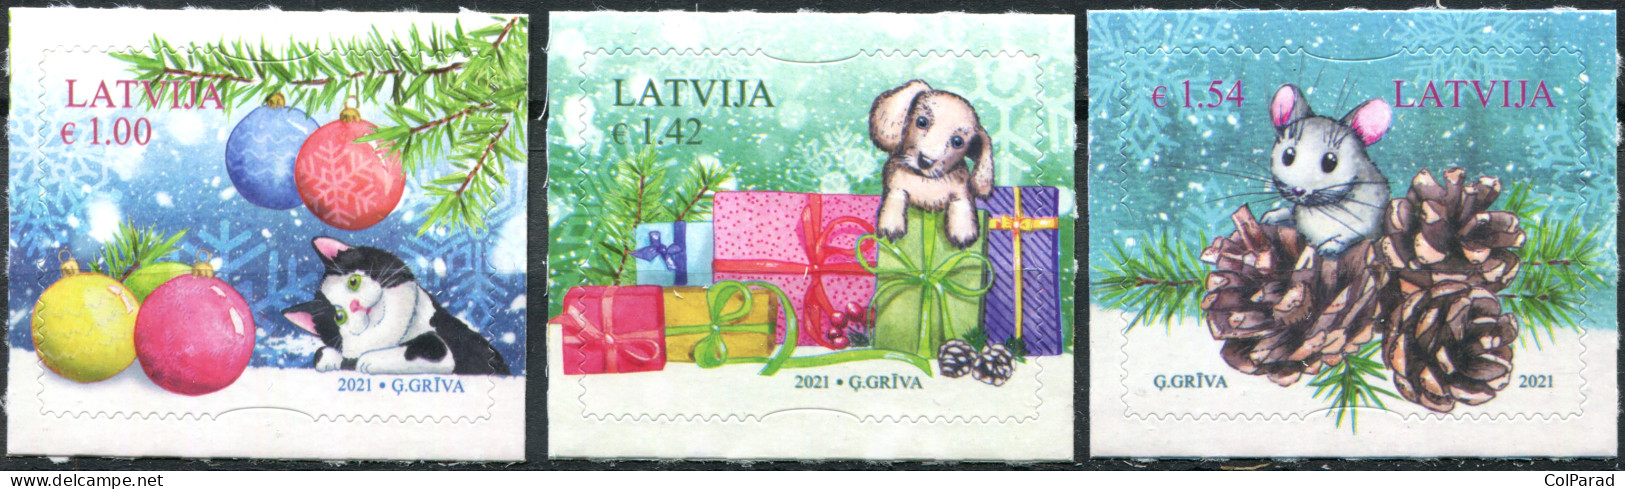 LATVIA - 2021 - SET OF 3 STAMPS MNH ** - Christmas - Letland